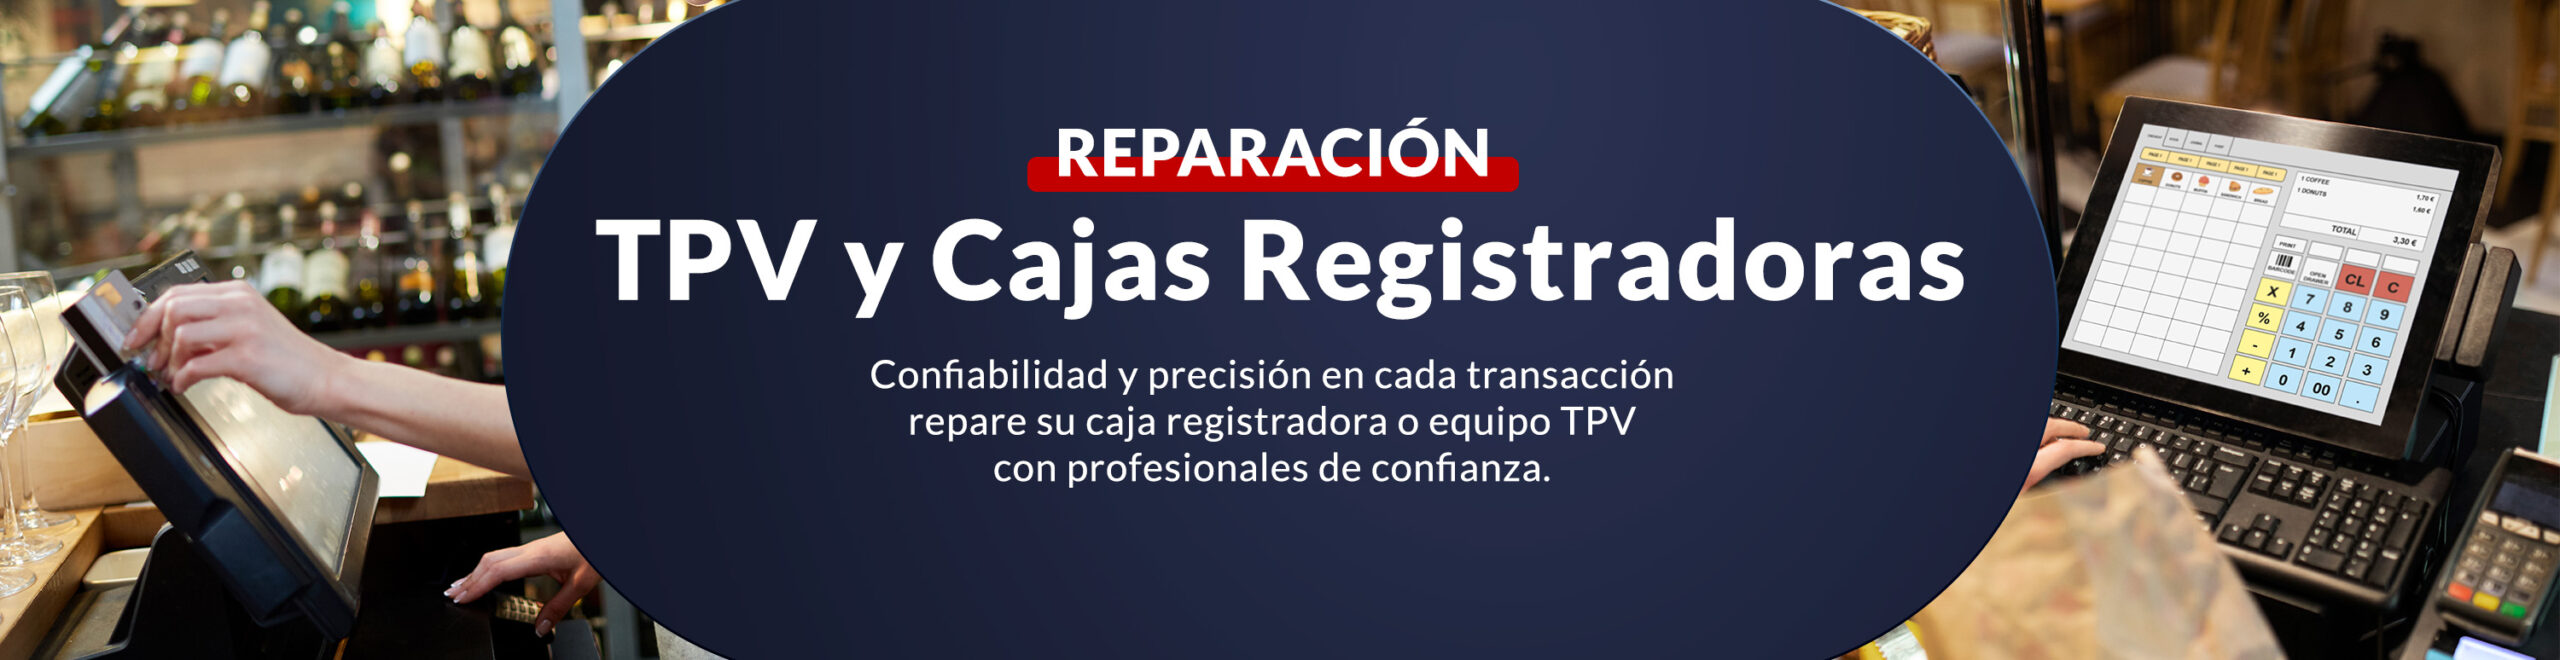 TVP y Cajas Registradoras